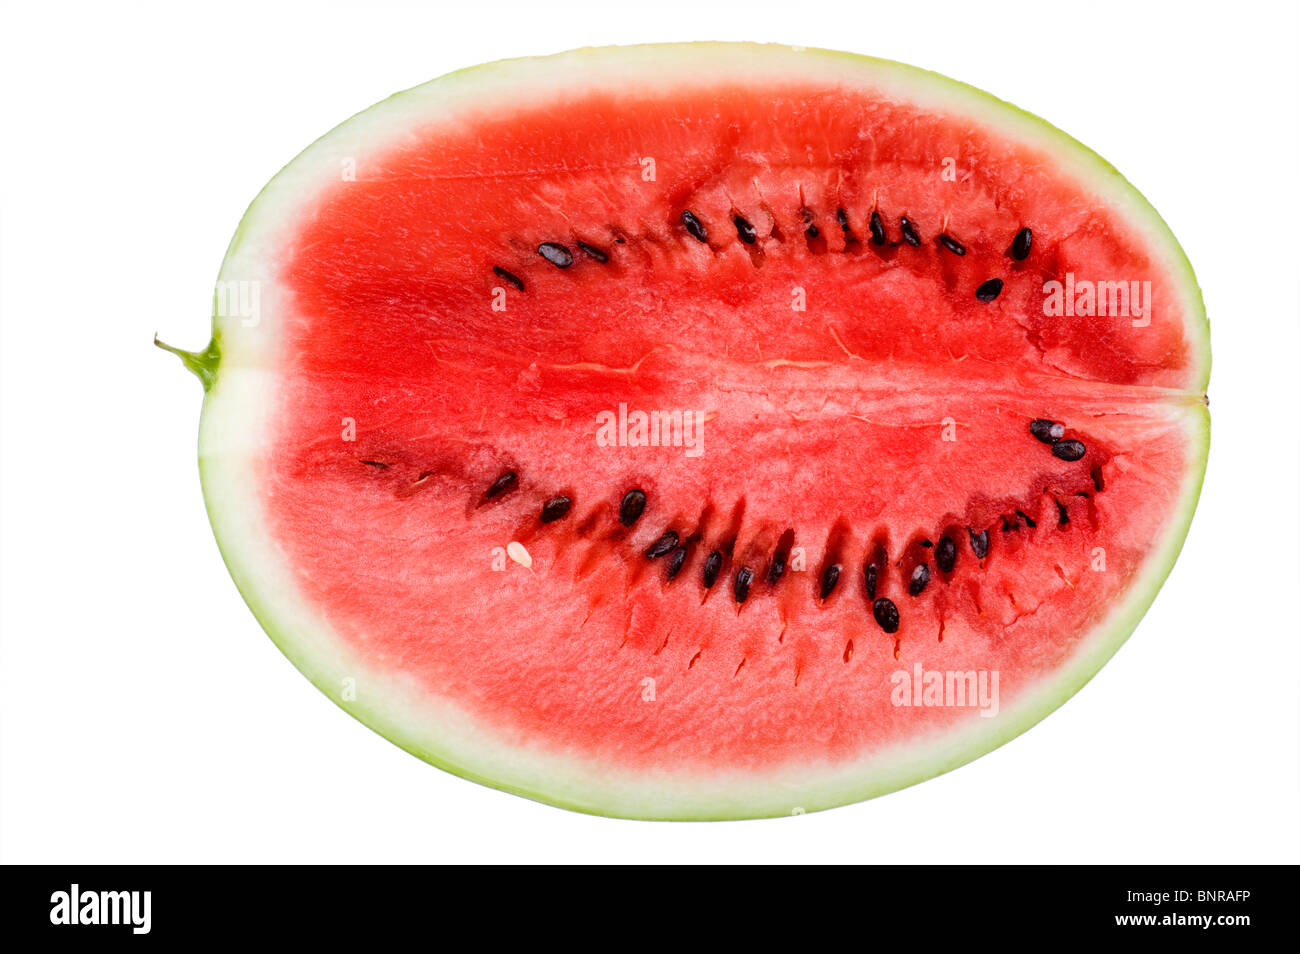 Objekt auf weiß - Wassermelone essen Nahaufnahme Stockfoto